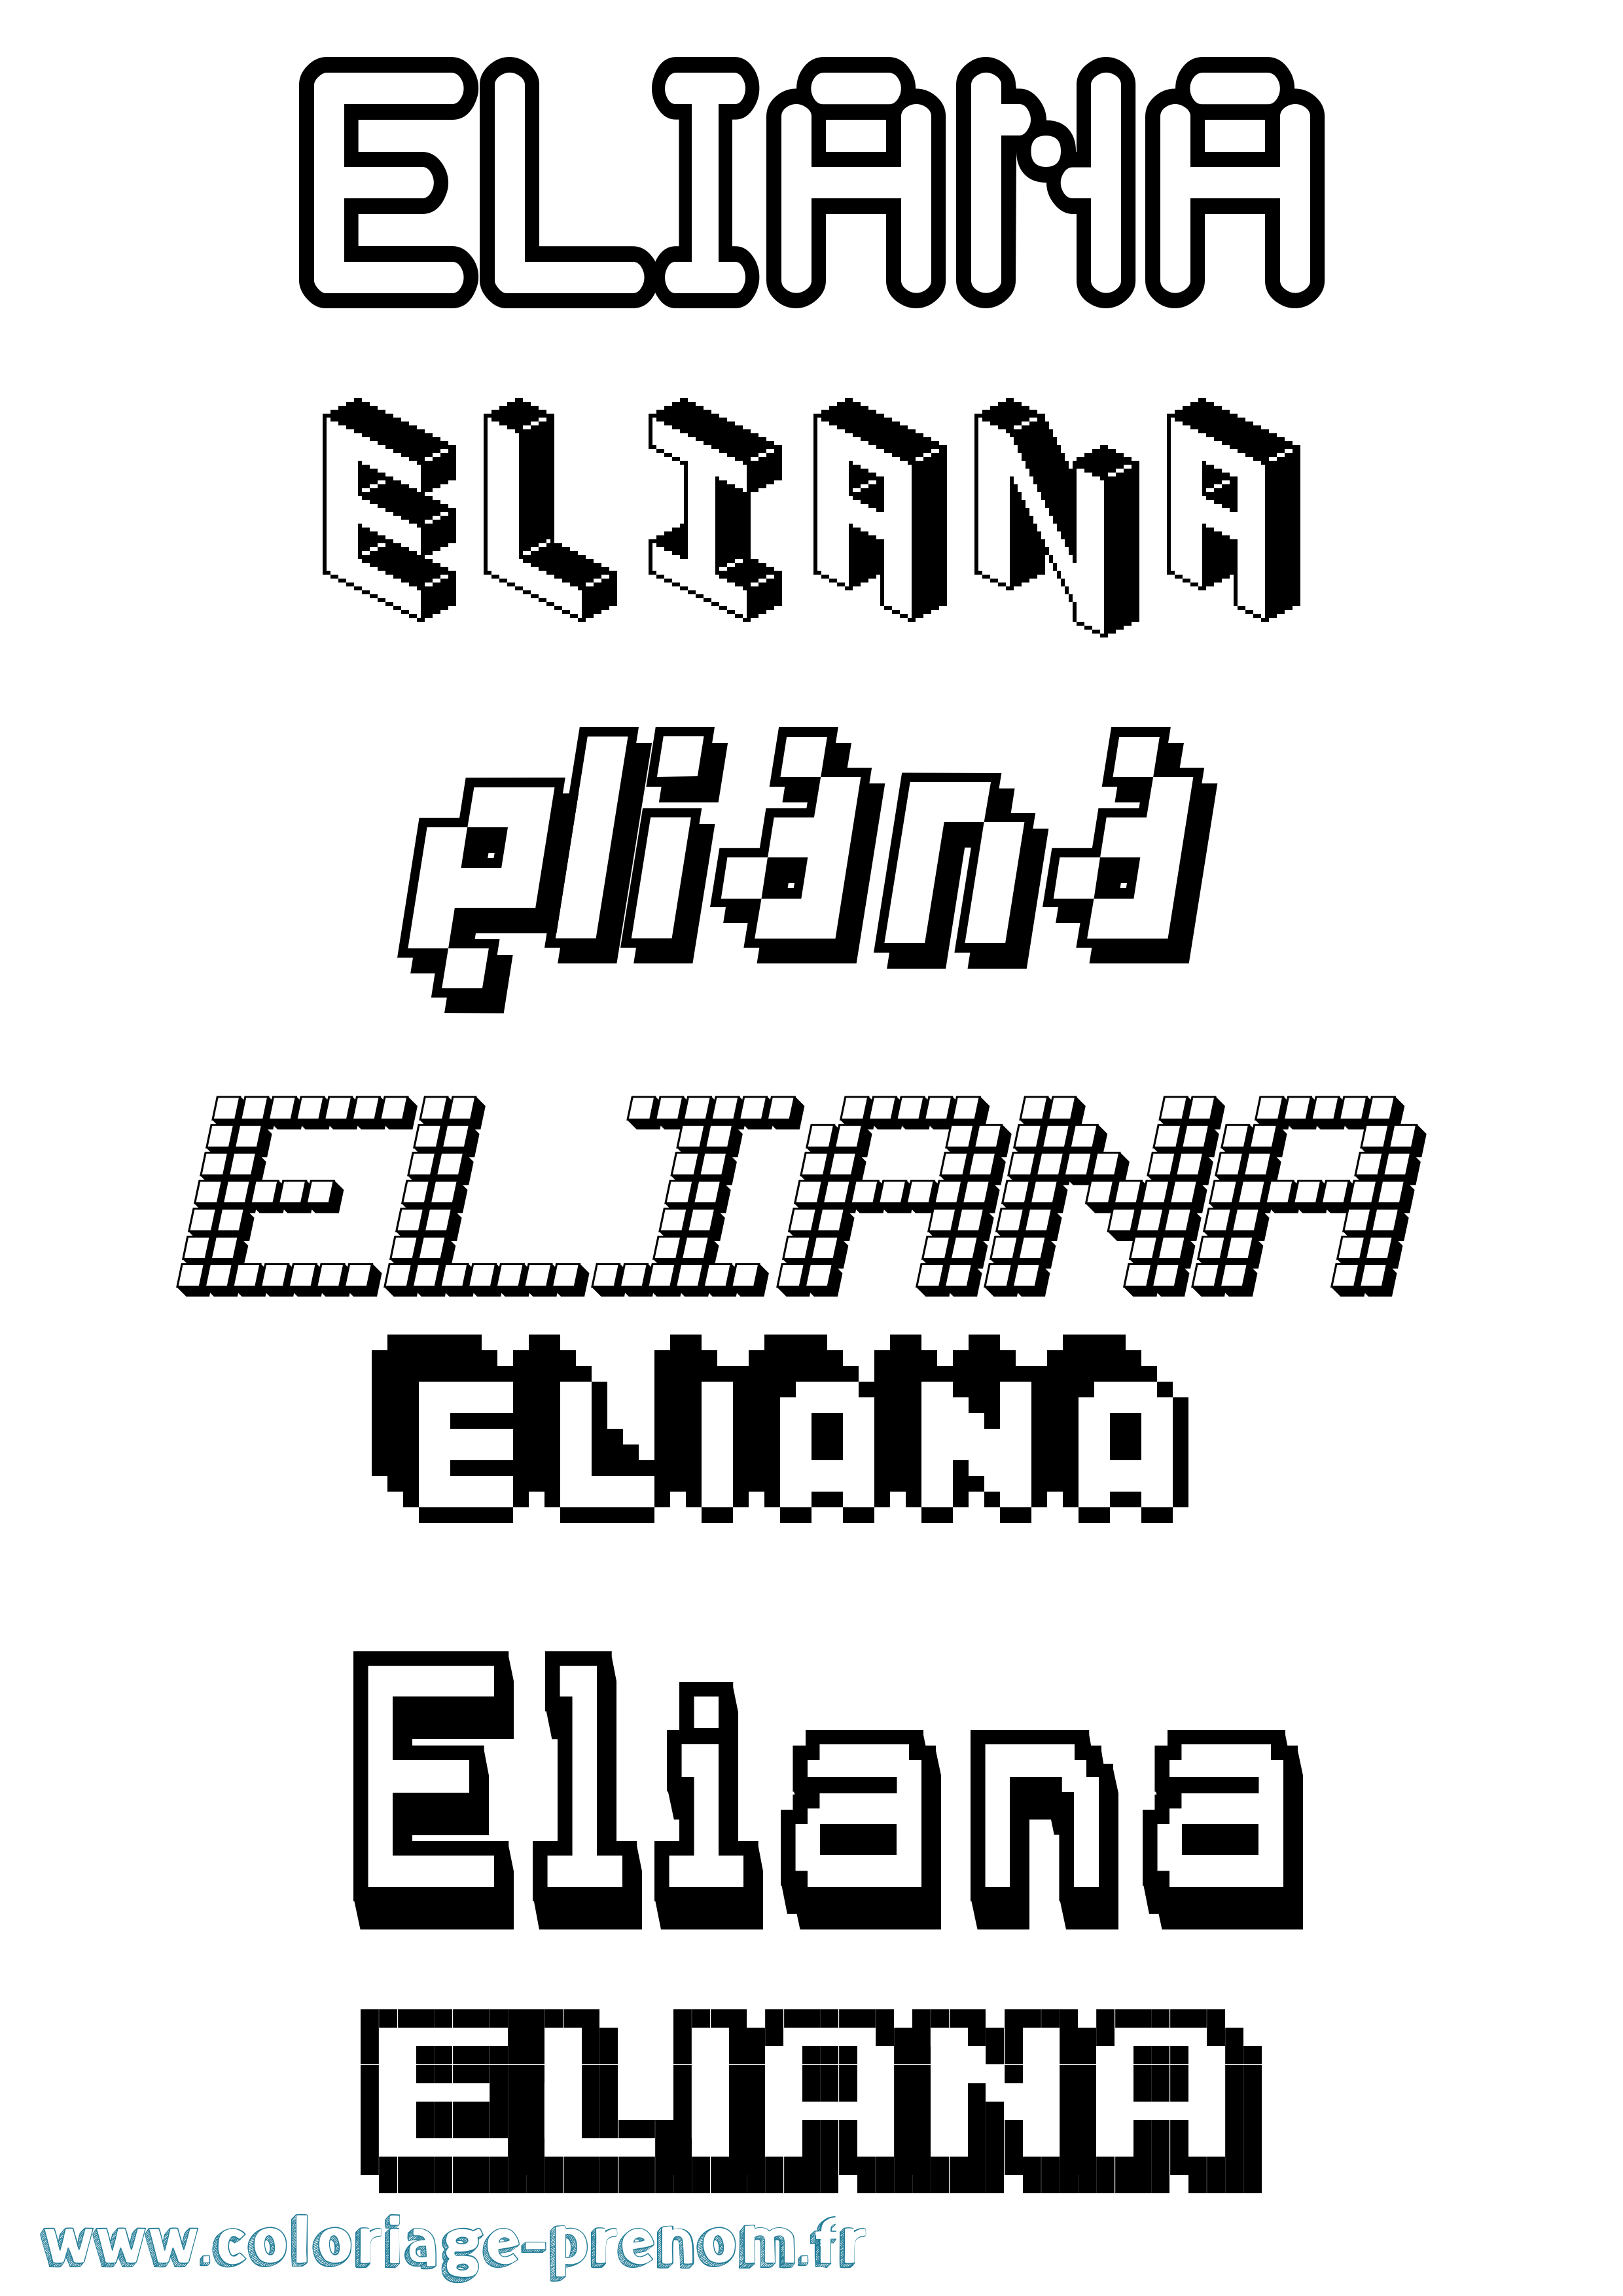 Coloriage prénom Eliana